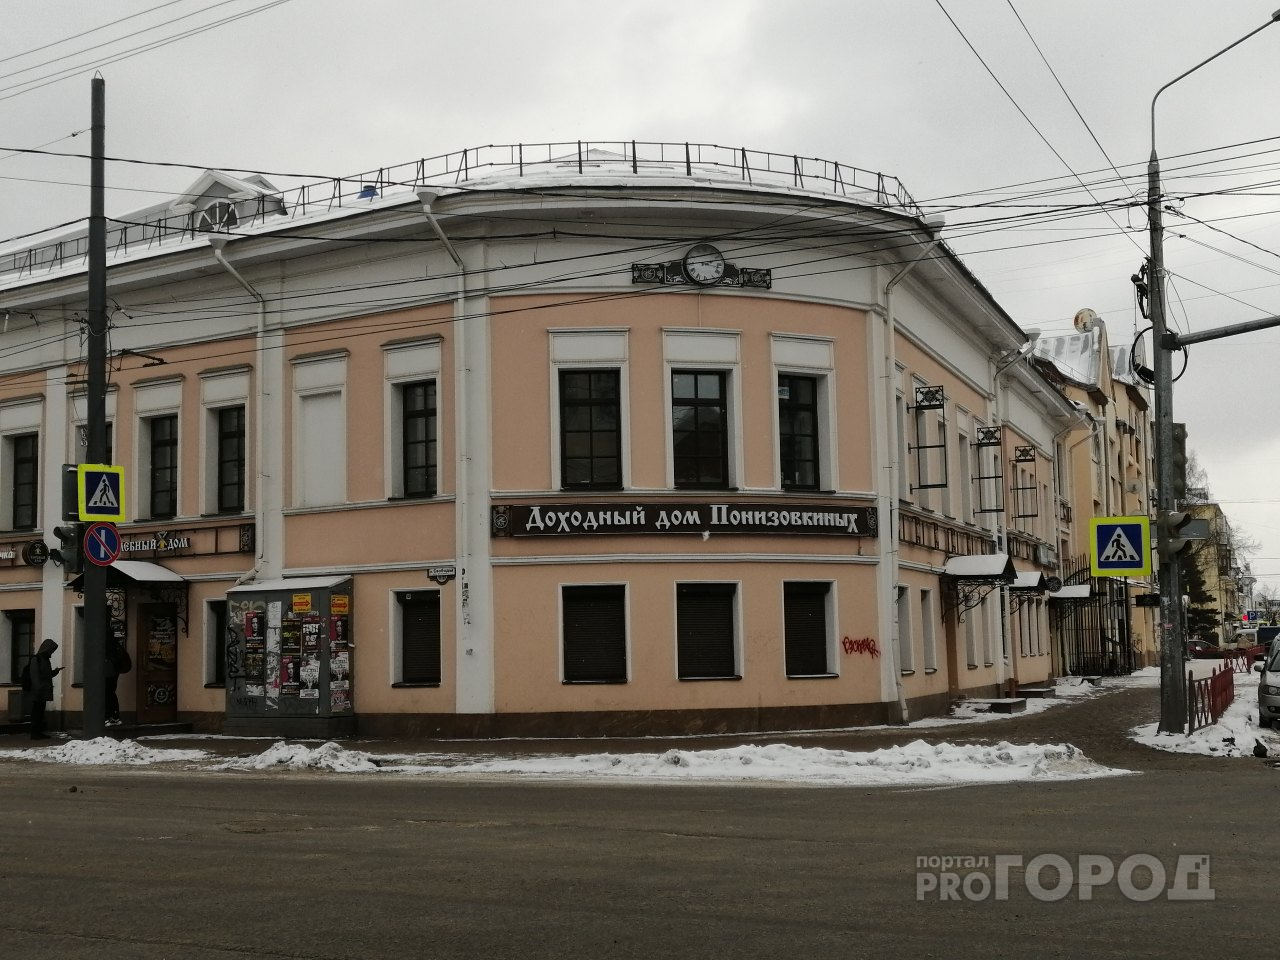 Найти 70 миллионов за 10 дней: почему в Ярославле арестовали памятник культурного наследия